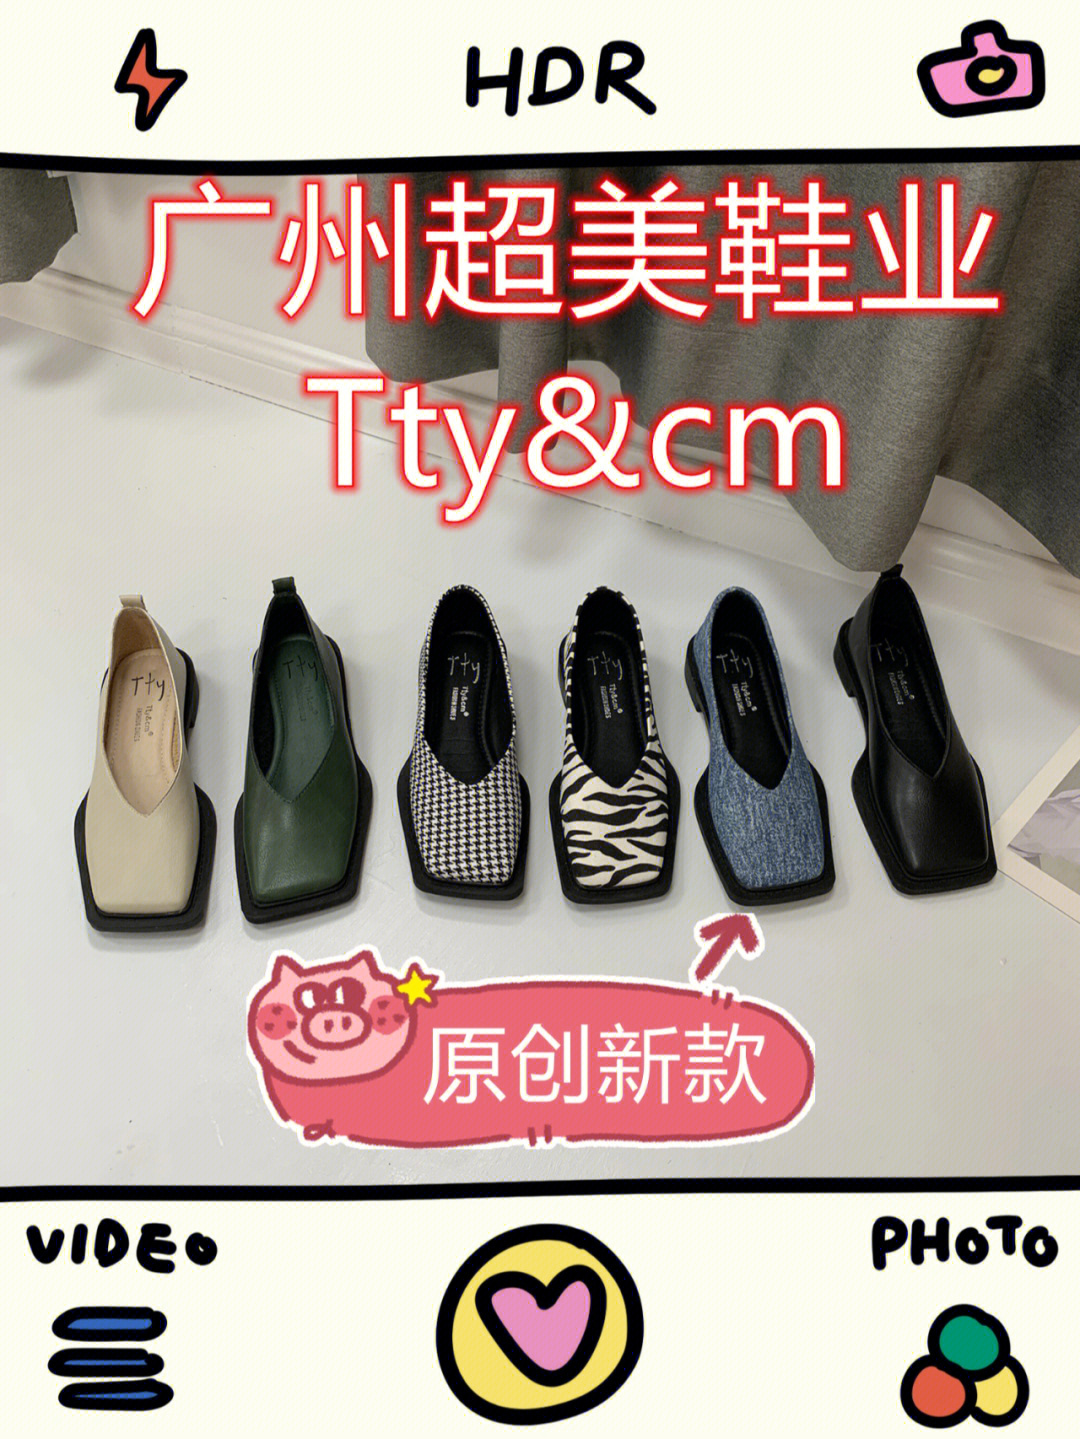 tty&cm广州女鞋批发店铺超好看网红爆款单鞋一手批发货源最低价欢迎进